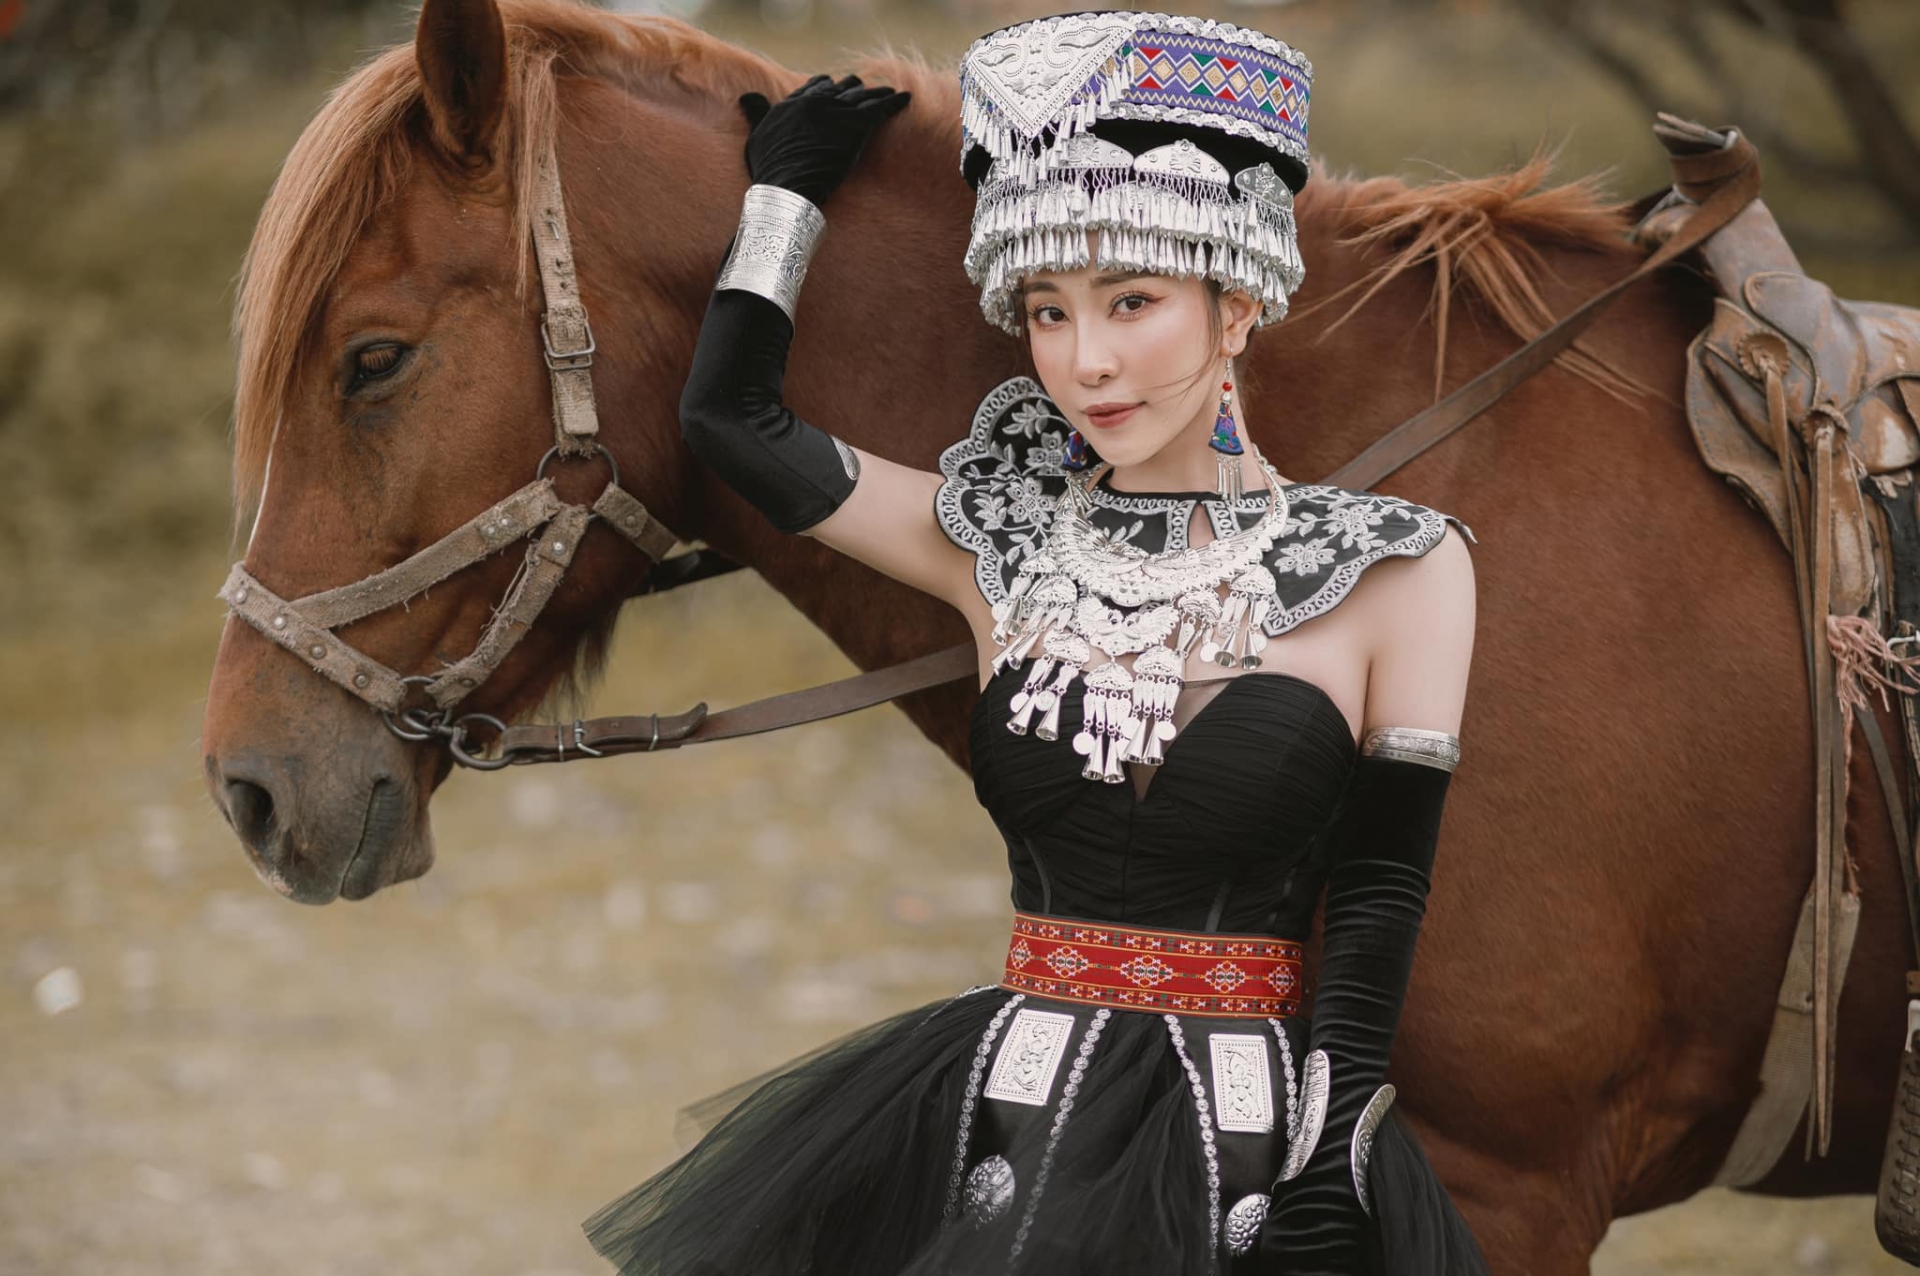 'Cá sấu chúa' Quỳnh Nga hóa công chúa Mông Cổ, cưỡi ngựa bắn cung đẹp như phim cổ trang Hoa ngữ - Ảnh 6